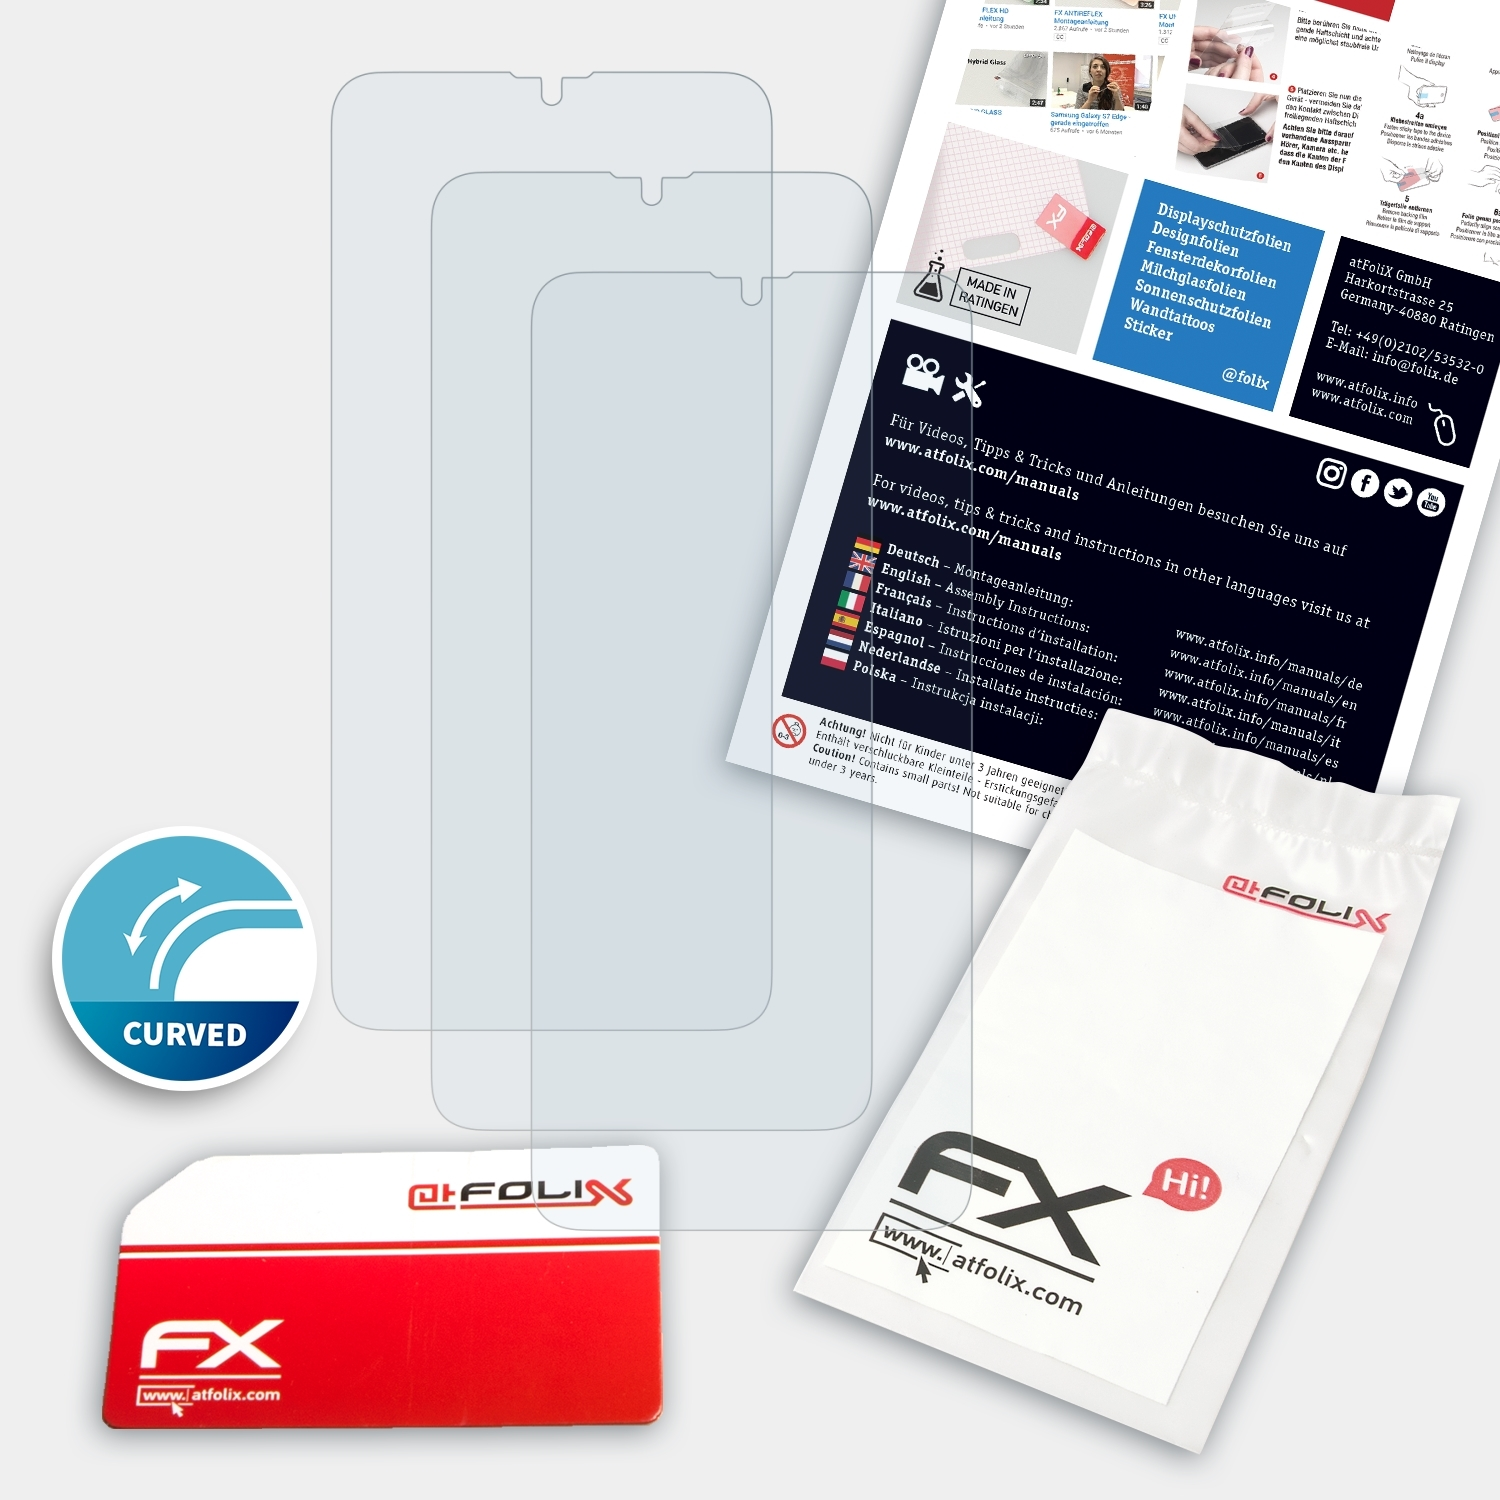 ATFOLIX 3x A20s) FX-ActiFleX Galaxy Displayschutz(für Samsung